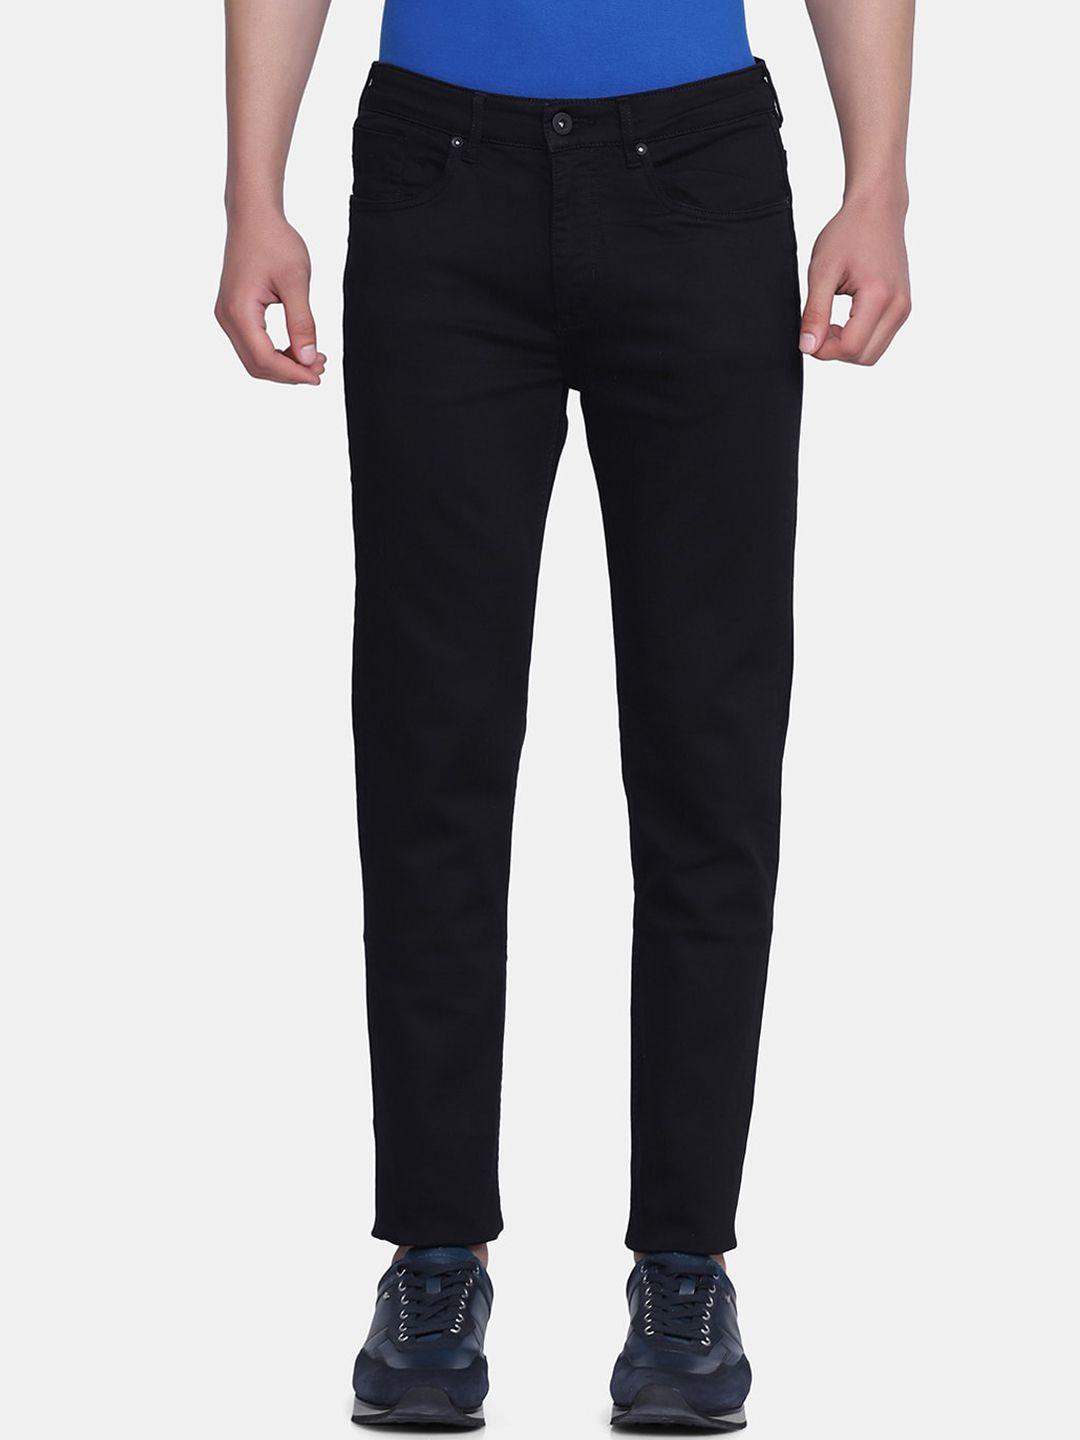 blackberrys-men-black-skinny-fit-low-rise-jeans